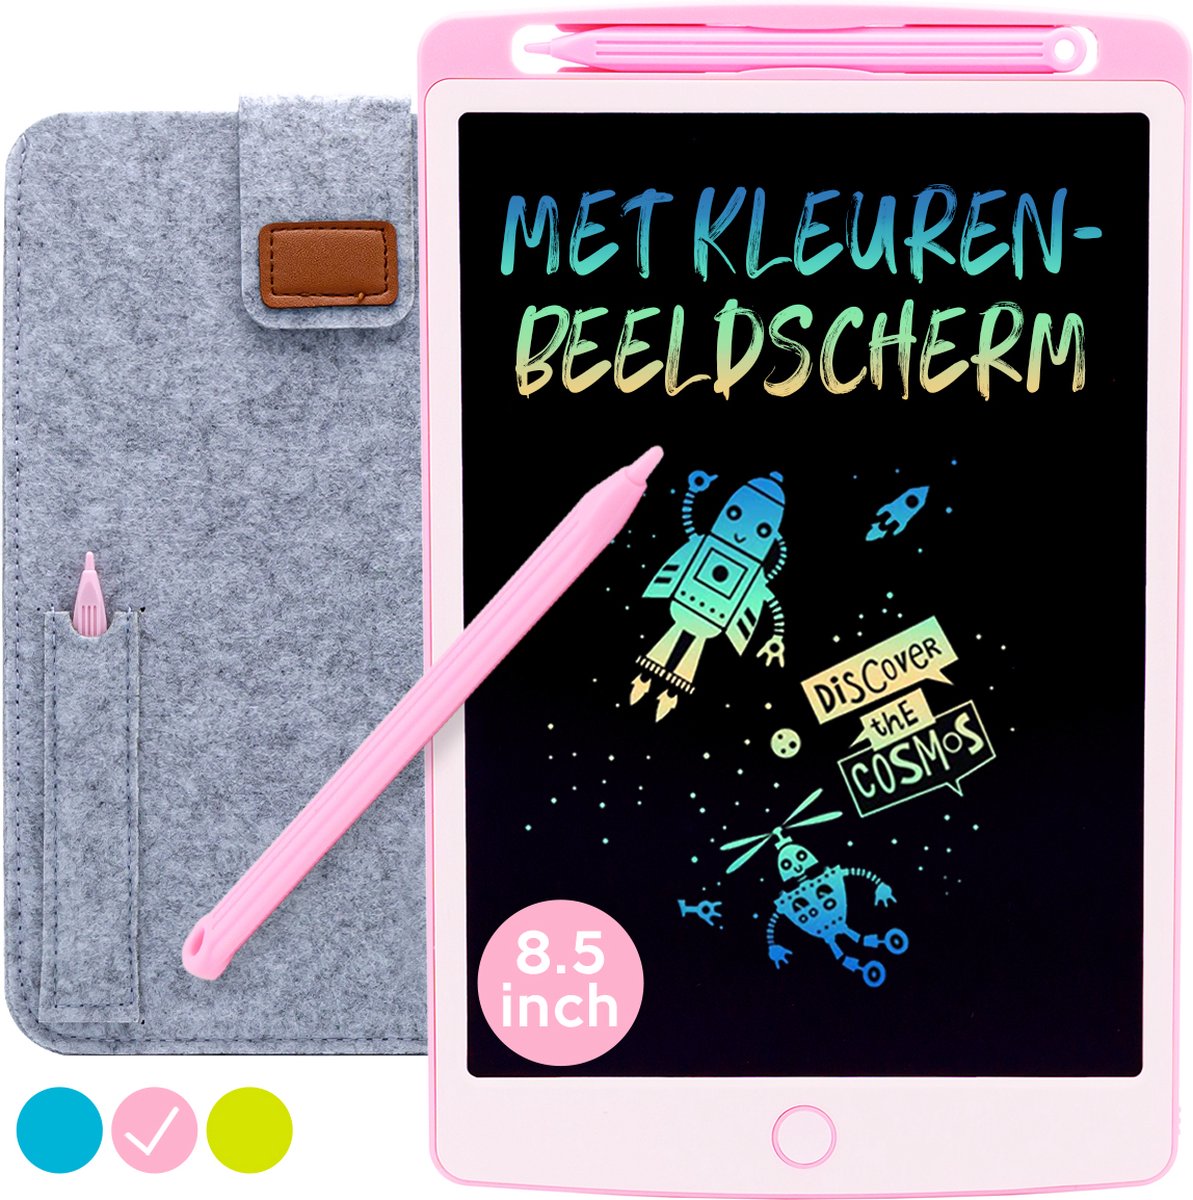 LCD Tekentablet Kinderen "Roze" 8.5 inch - Kleurenscherm - Speelgoed Meisjes - Educatief Speelgoed Meisjes - 3 jaar - 4 jaar - 5 jaar - 7 jaar - 8 jaar - Kids Tablet - Drawing Tablet - Kindertablet - Tekenpad - Drawing Pad - Speelgoed Voor Onderweg